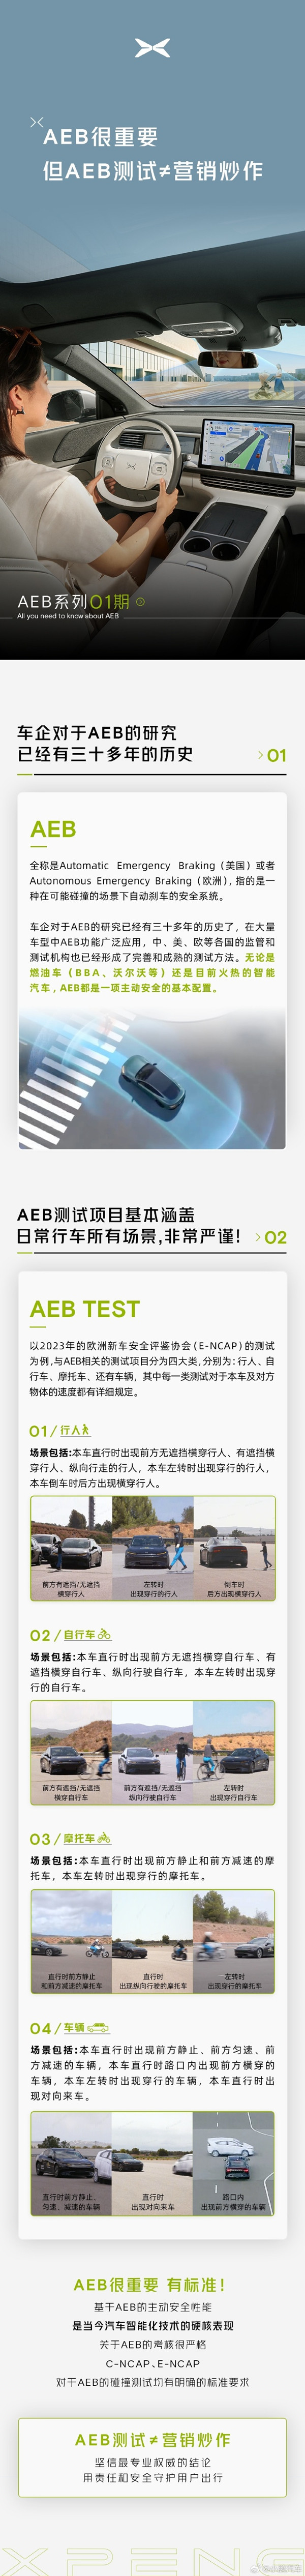 小鹏发布AEB学习笔记第1期 称AEB测试不等于营销炒作